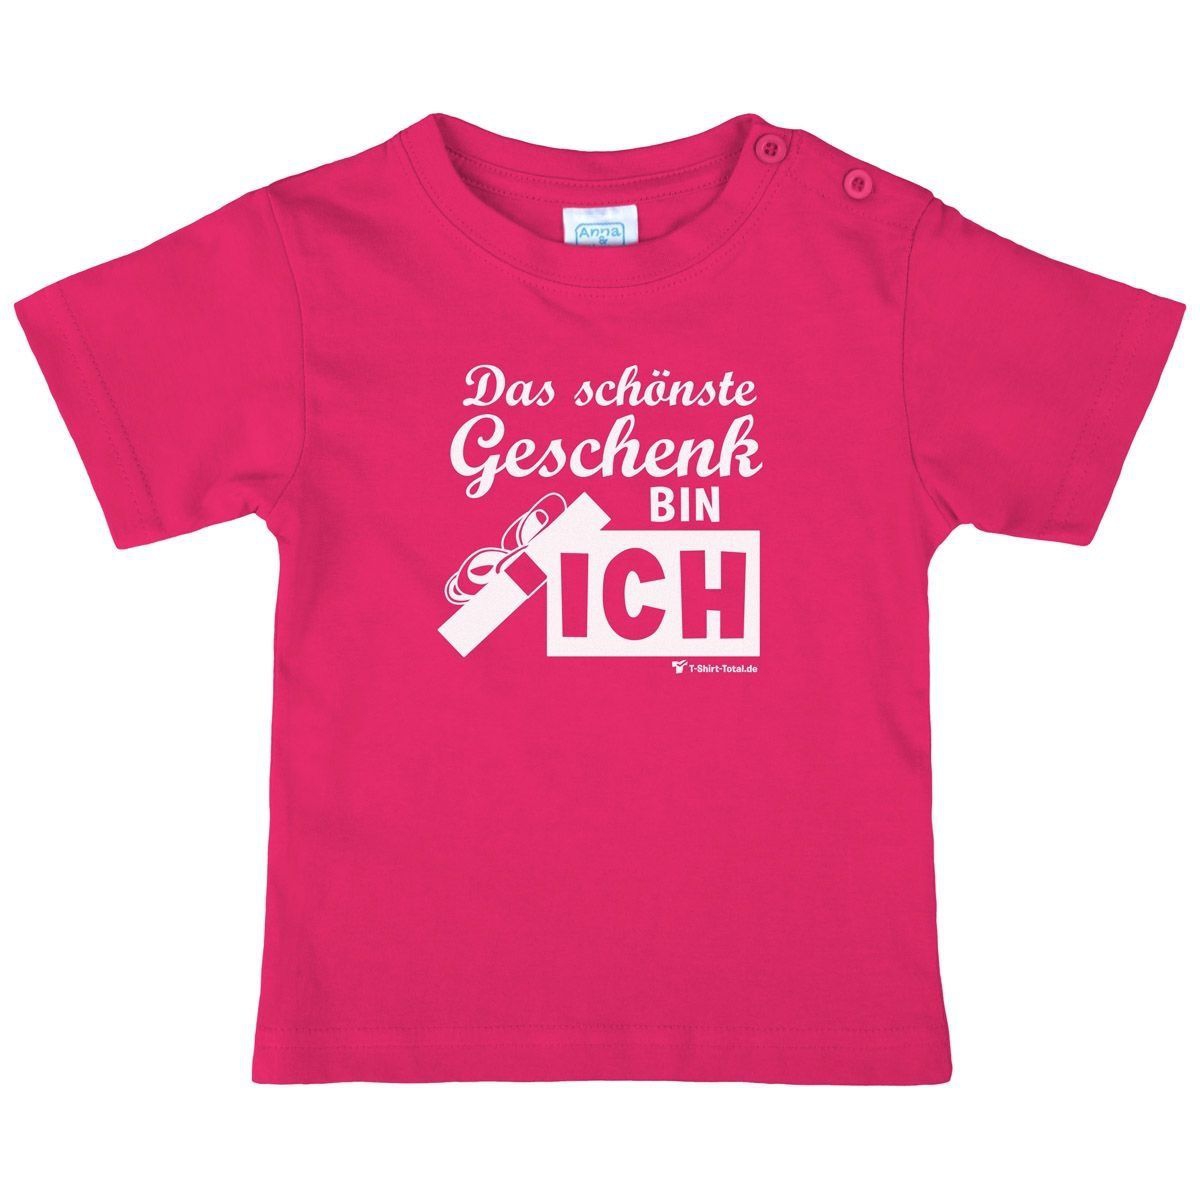 Schönste Geschenk Kinder T-Shirt pink 68 / 74